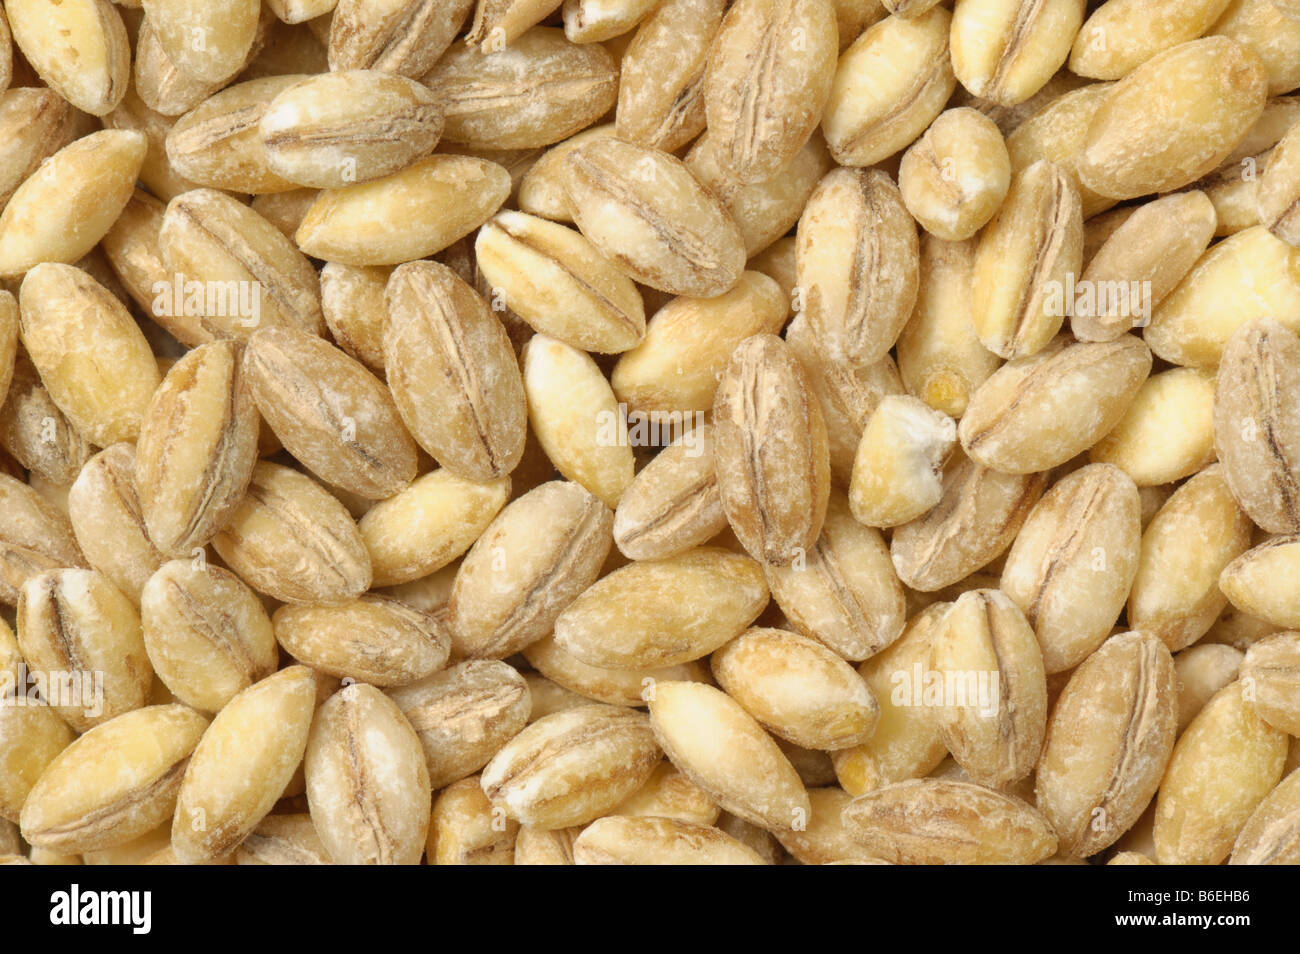 Pearl barley grain as sold in health food shops grown in UK Stock Photo